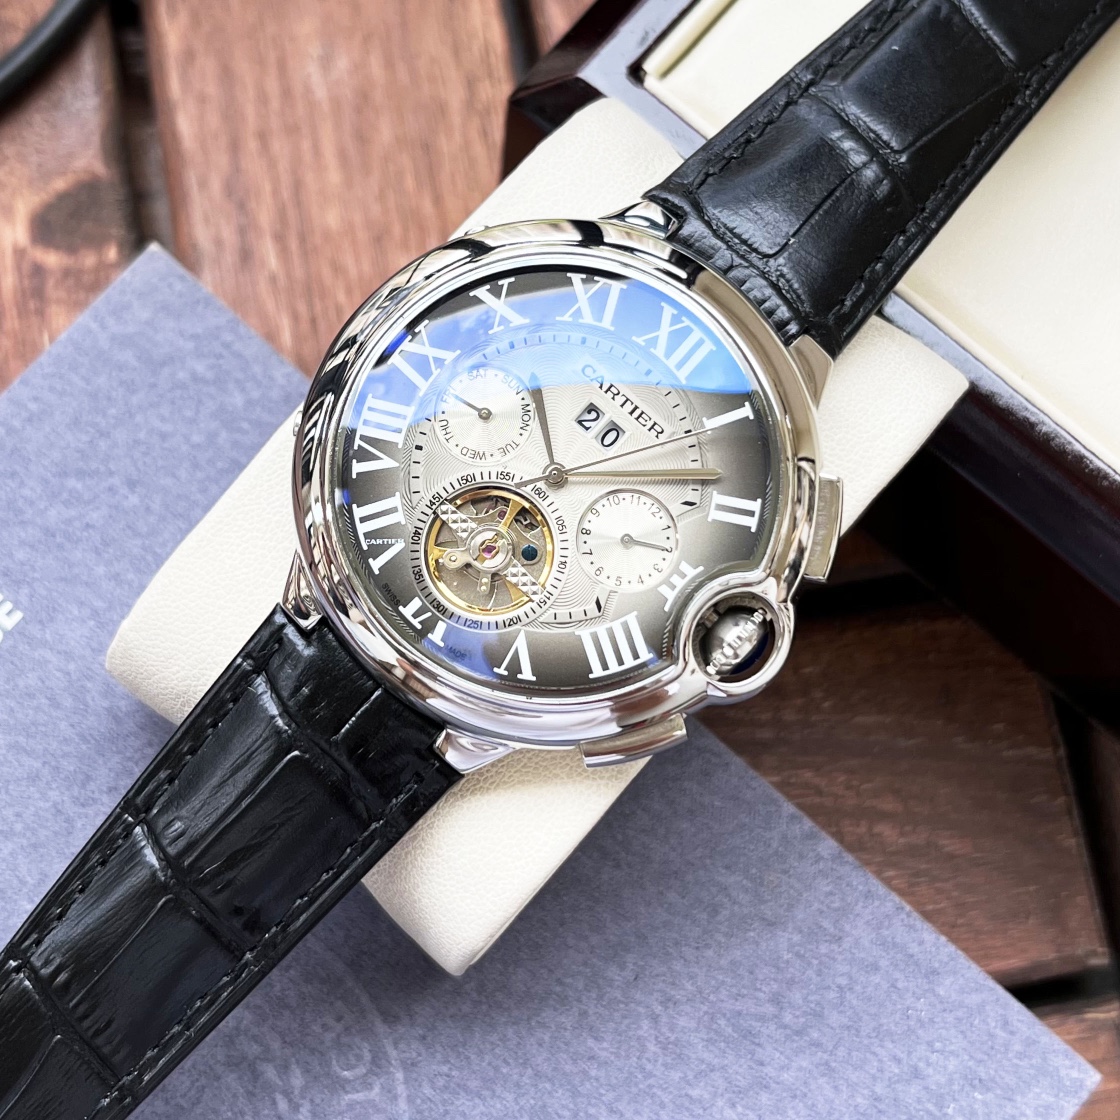 CARTIERカルティエに似てる時計スーパーコピー フランス 薄いワッチ レザー 丸い形 ブラウン_5